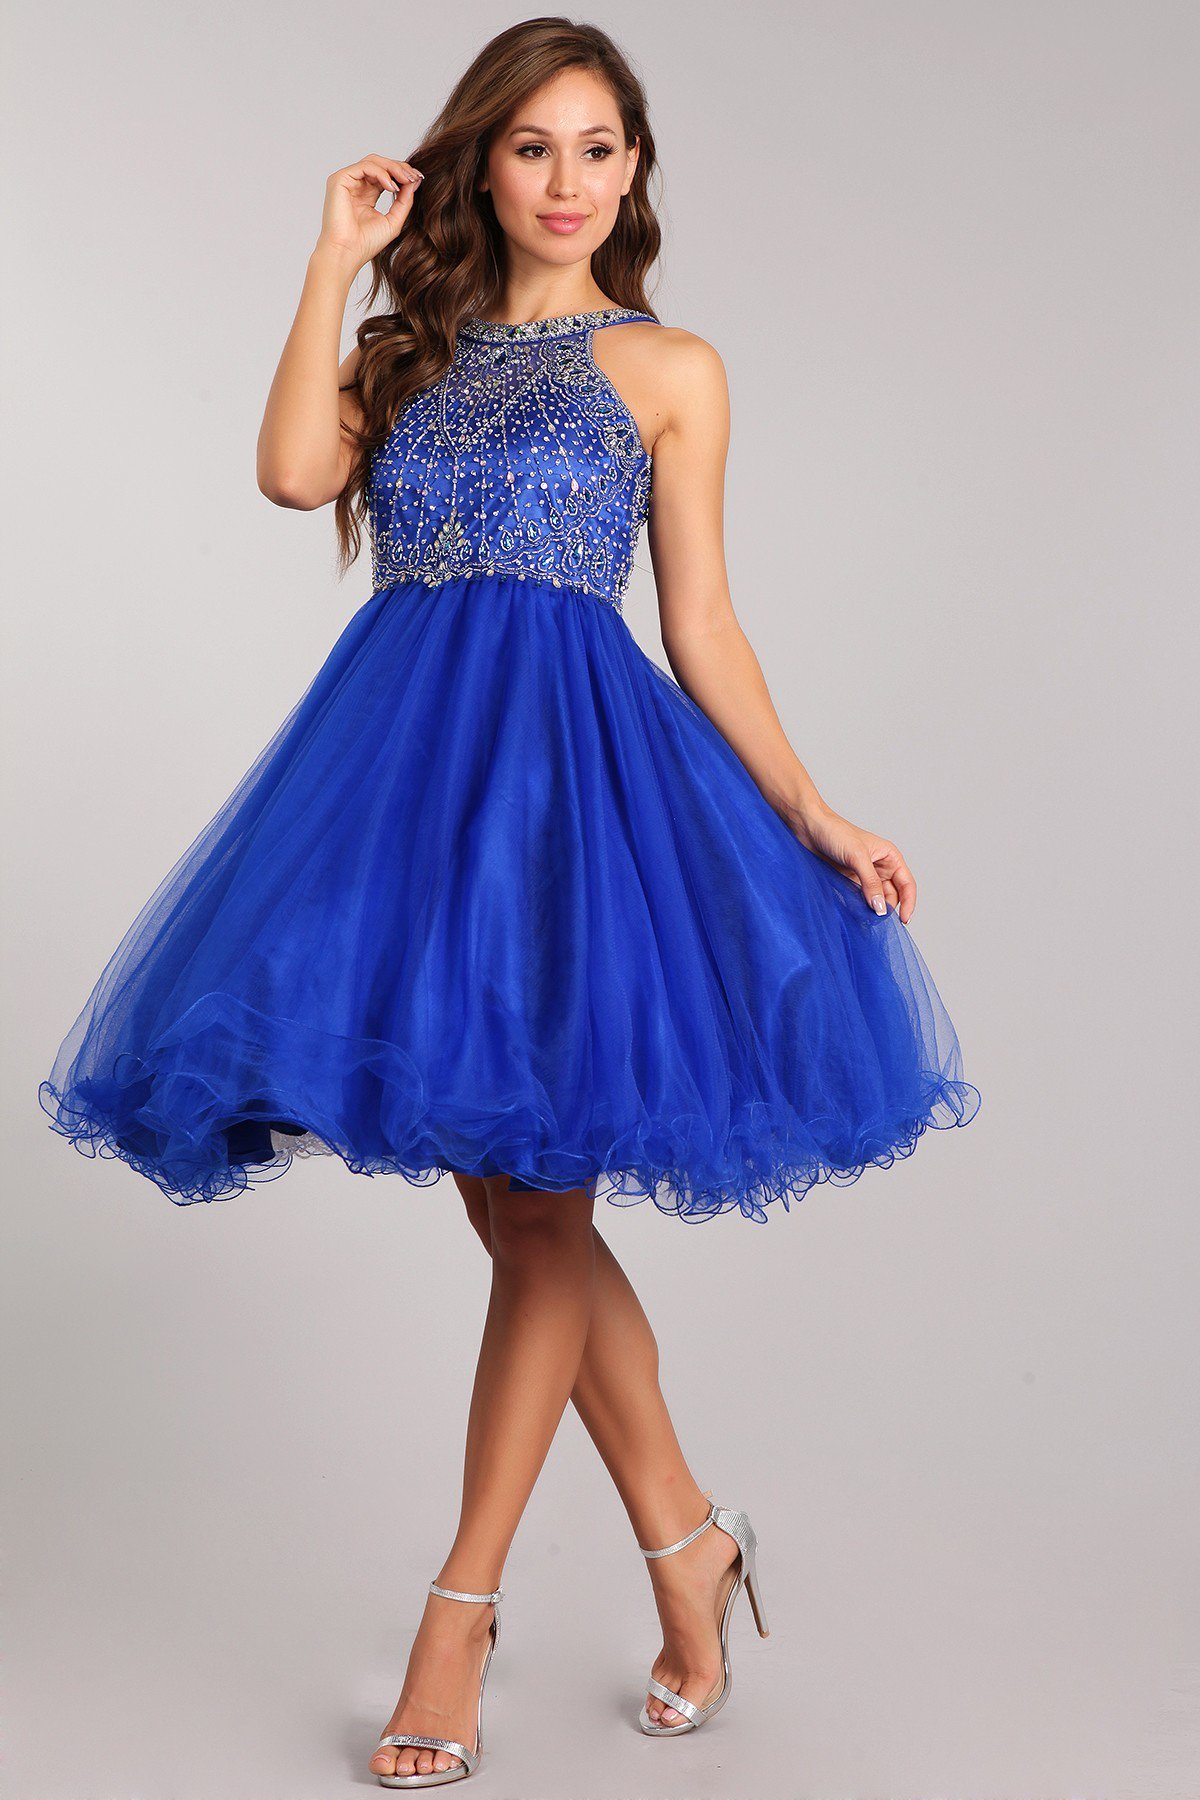 blue dresses for school dances